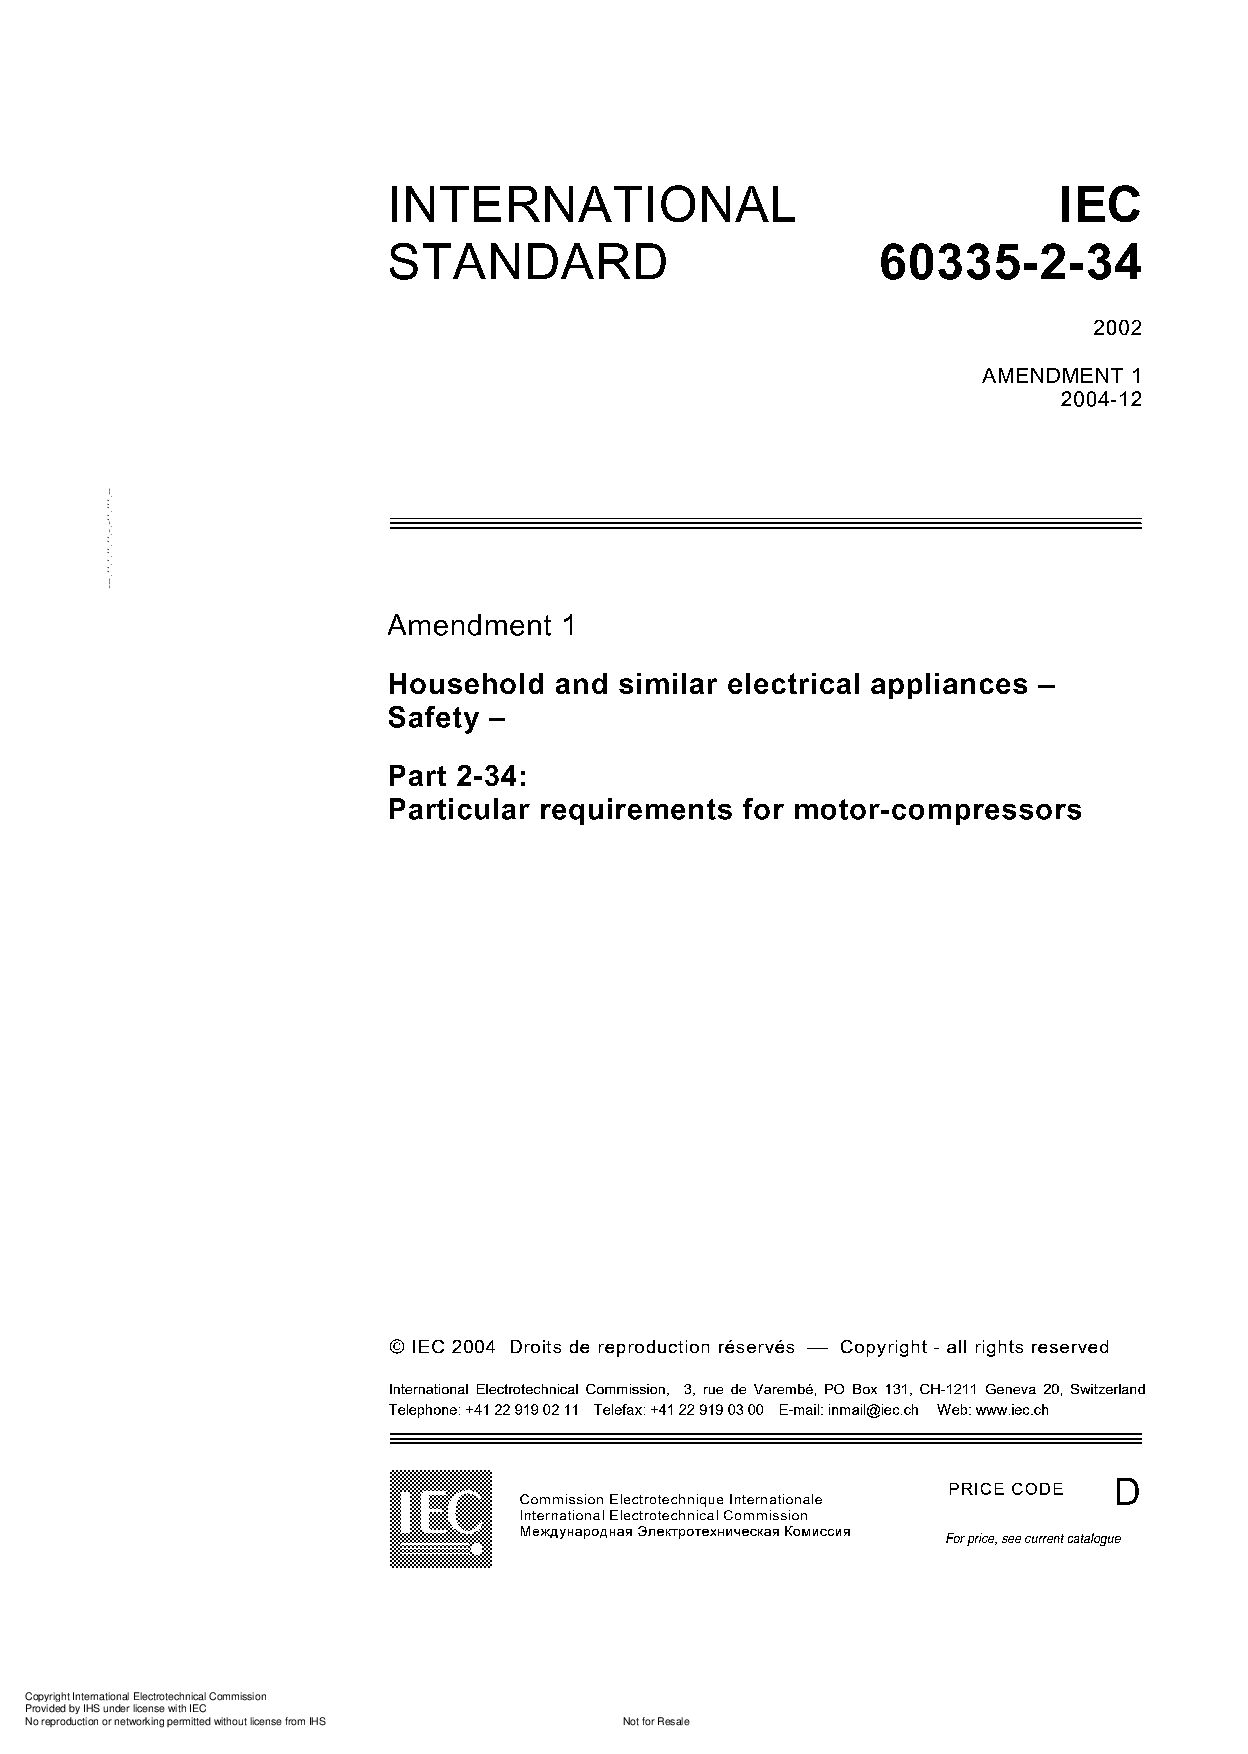 IEC 60335-2-34:2002封面图